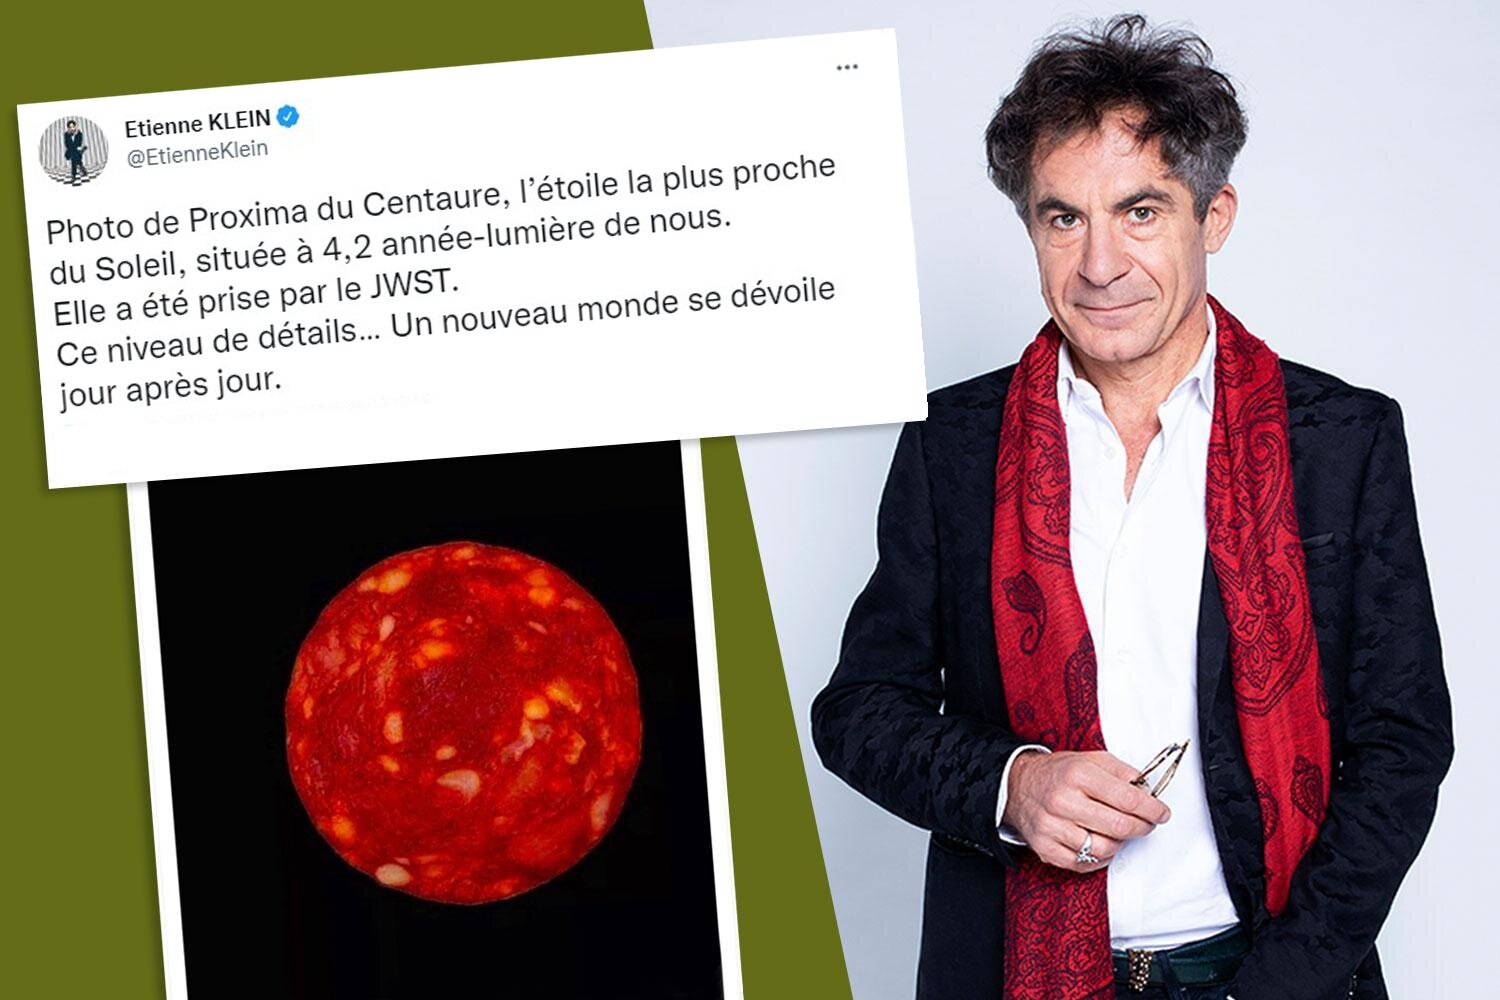 Французский учёный выдал ломтик чоризо за фото Проксимы Центавра